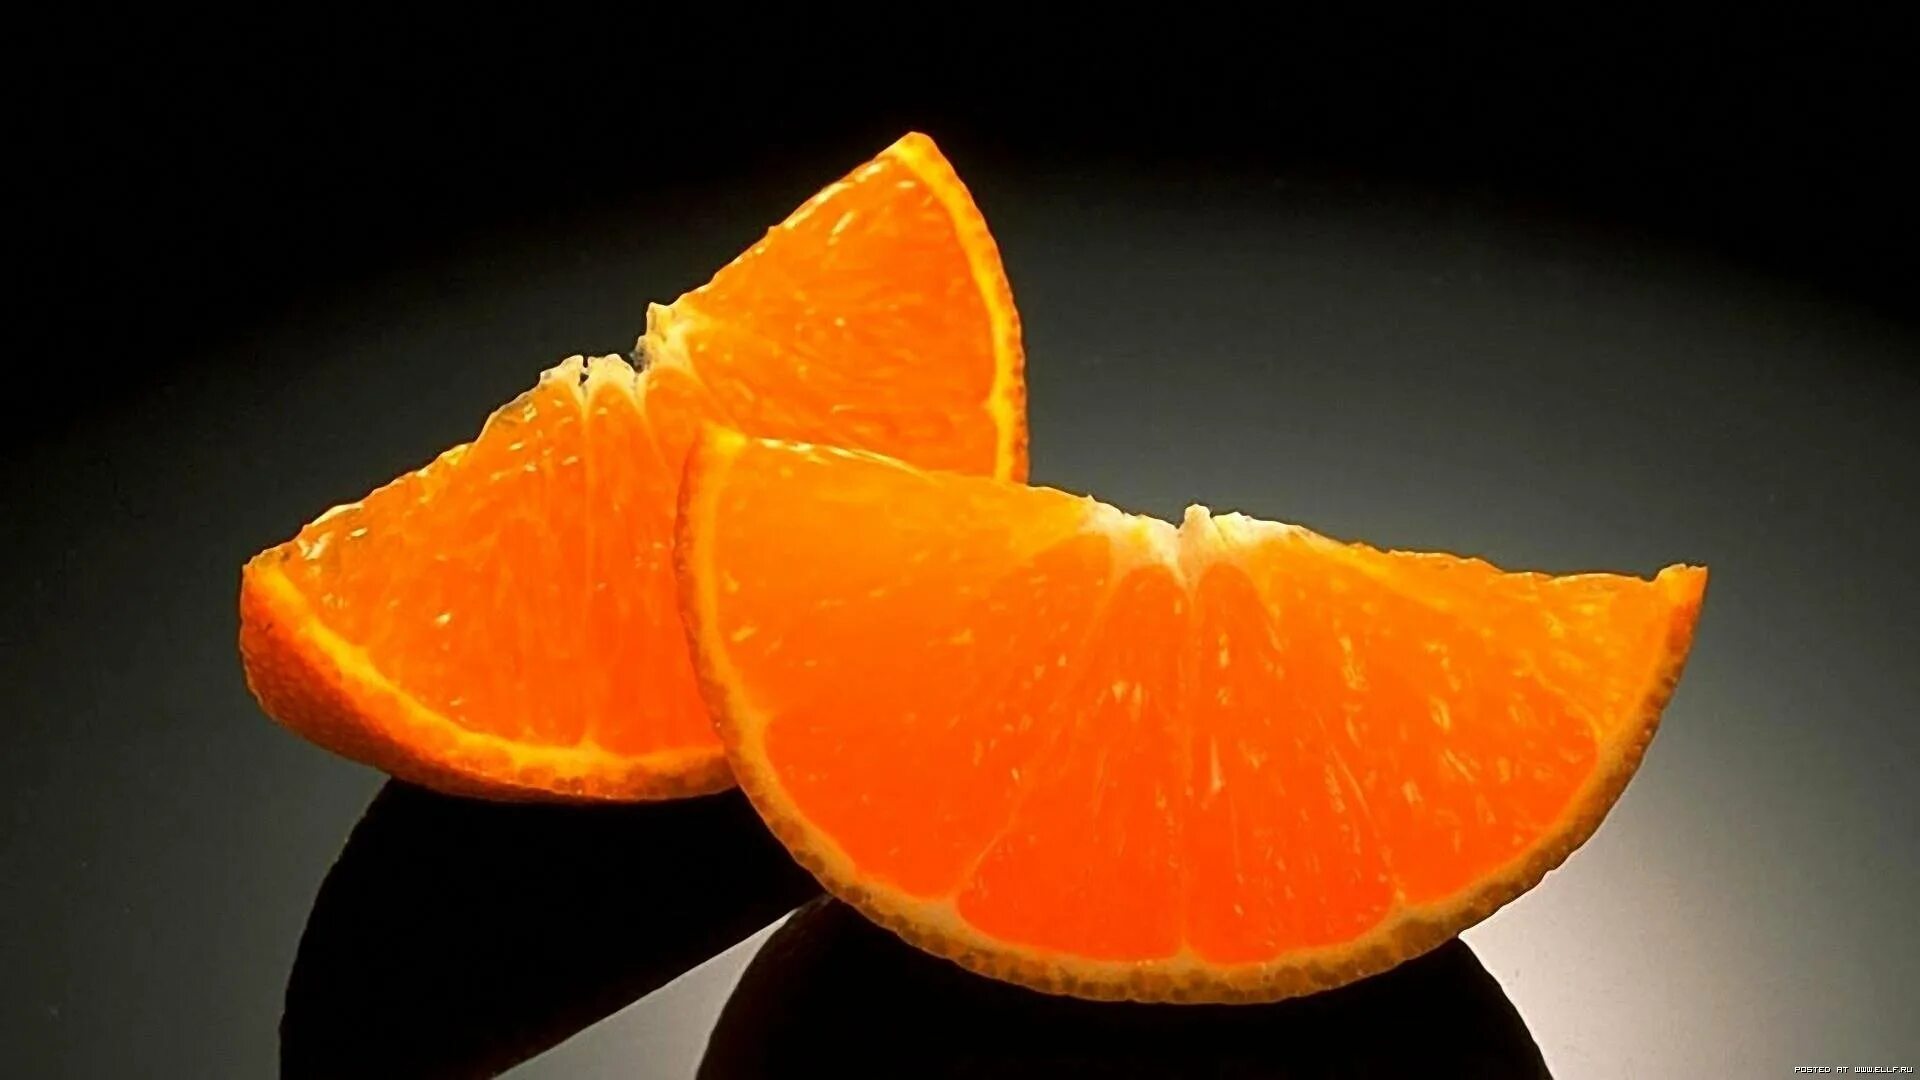 Apelsin 1:1. Долька апельсина. Апельсины на темном фоне. Красивый апельсин. Темный мандарин